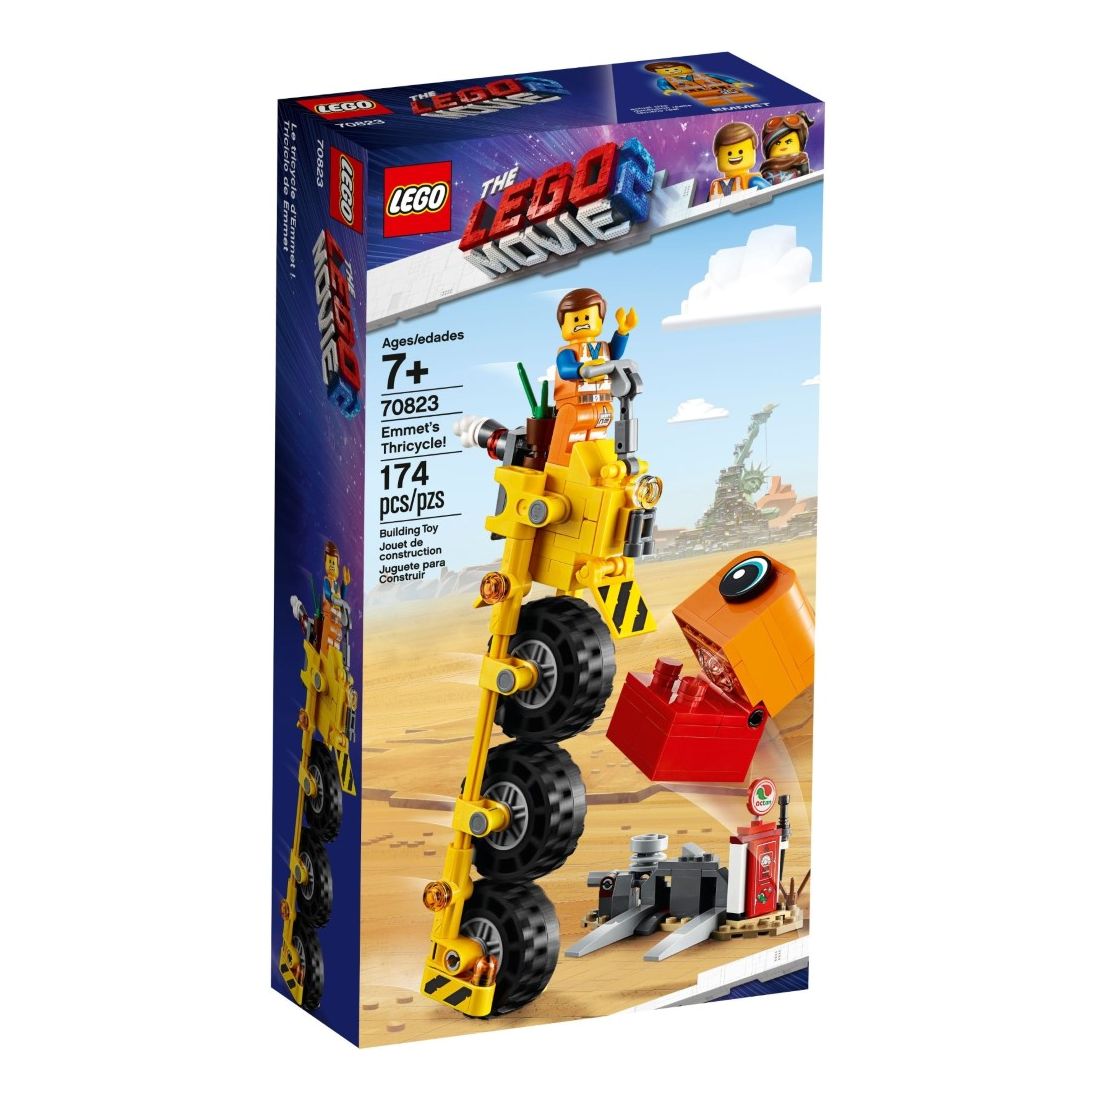 LEGO Movie 2 Emmet's Thricycle 70823